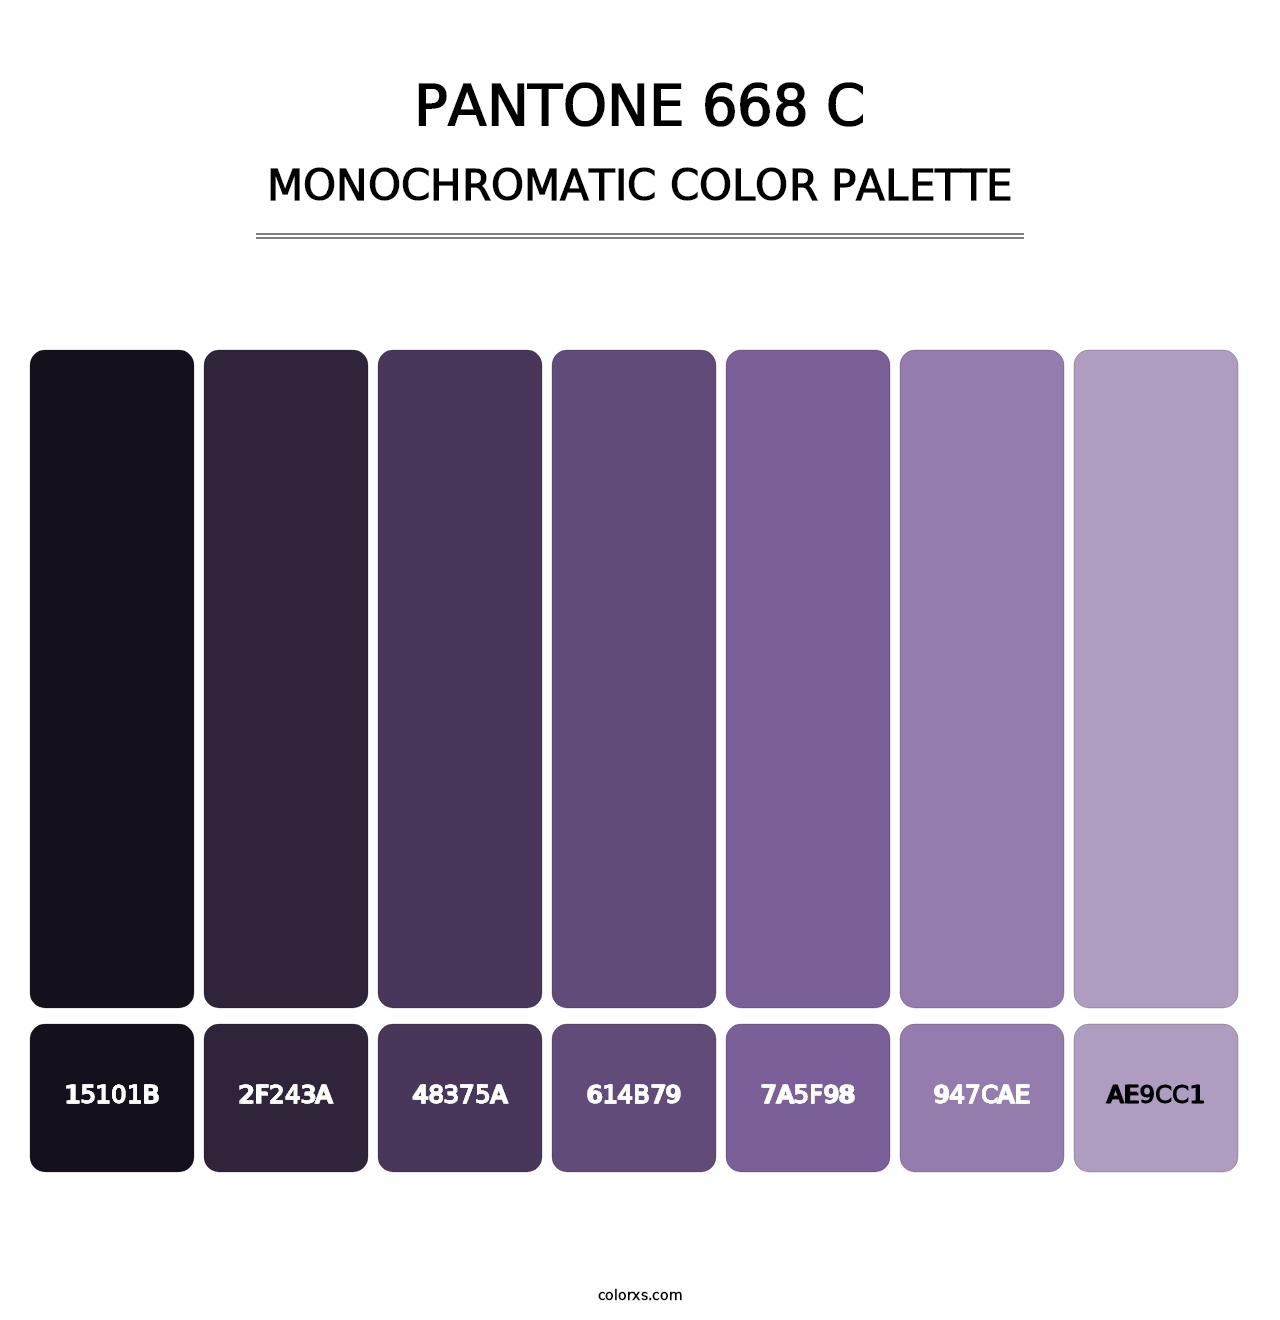 PANTONE 668 C - Monochromatic Color Palette